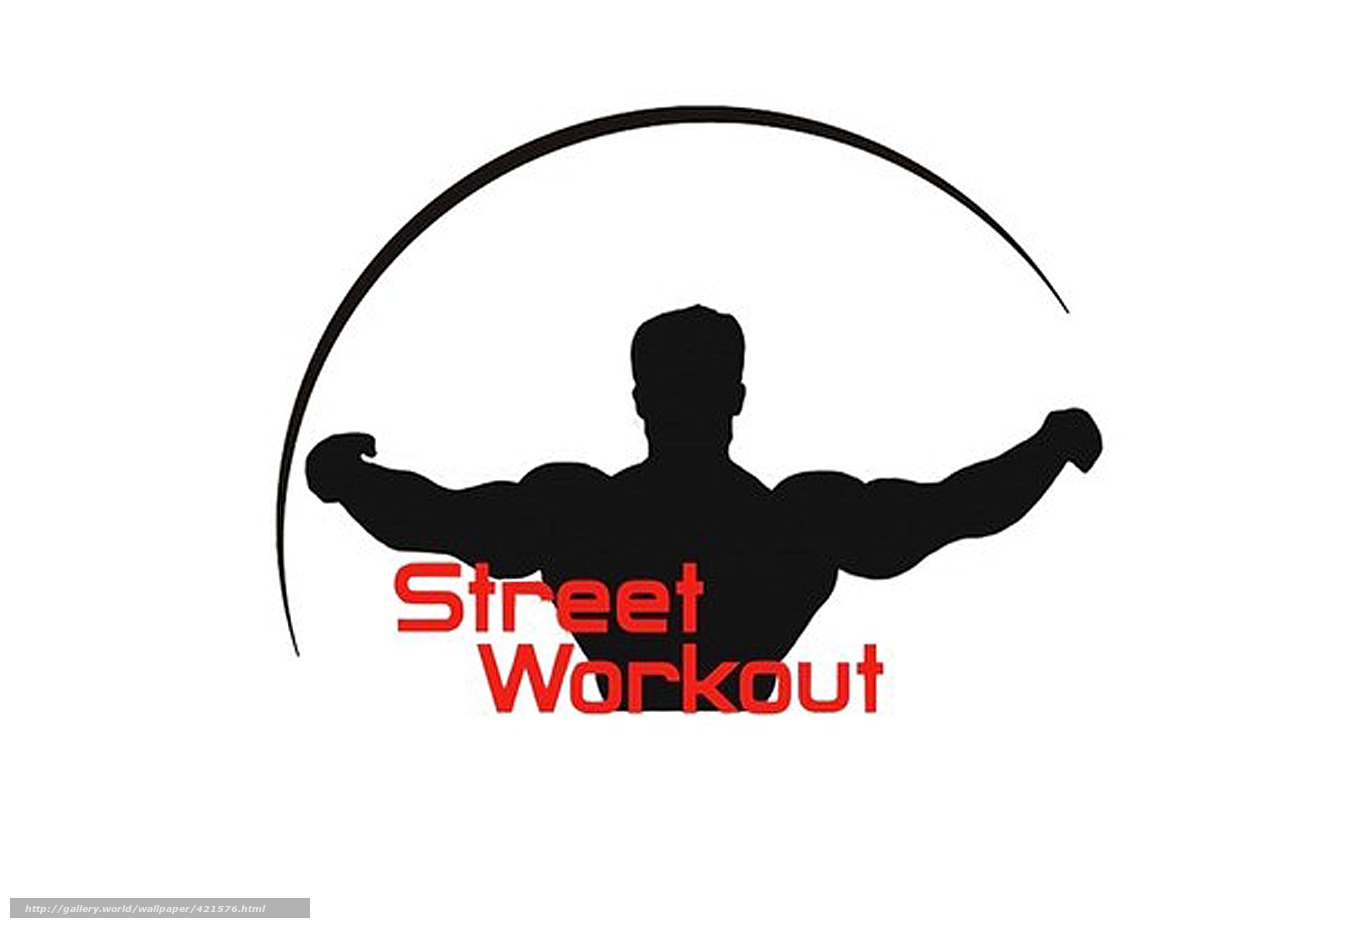 Download wallpaper street workout Workout Sport outdoor